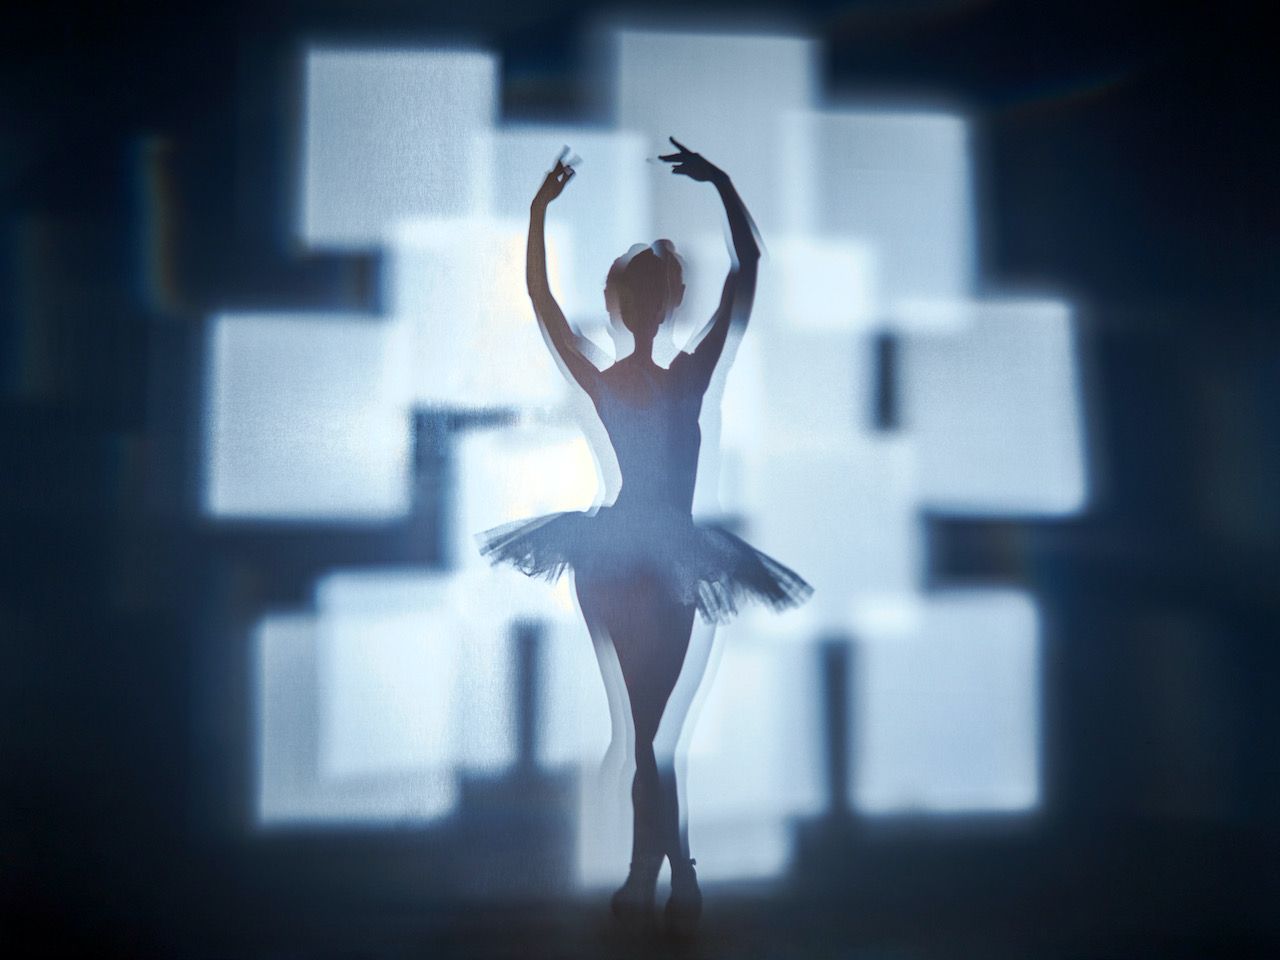 Michael Haegele fotografia astratta silhouette di ballerina con quadrati luminosi sovrapposti sullo sfondo